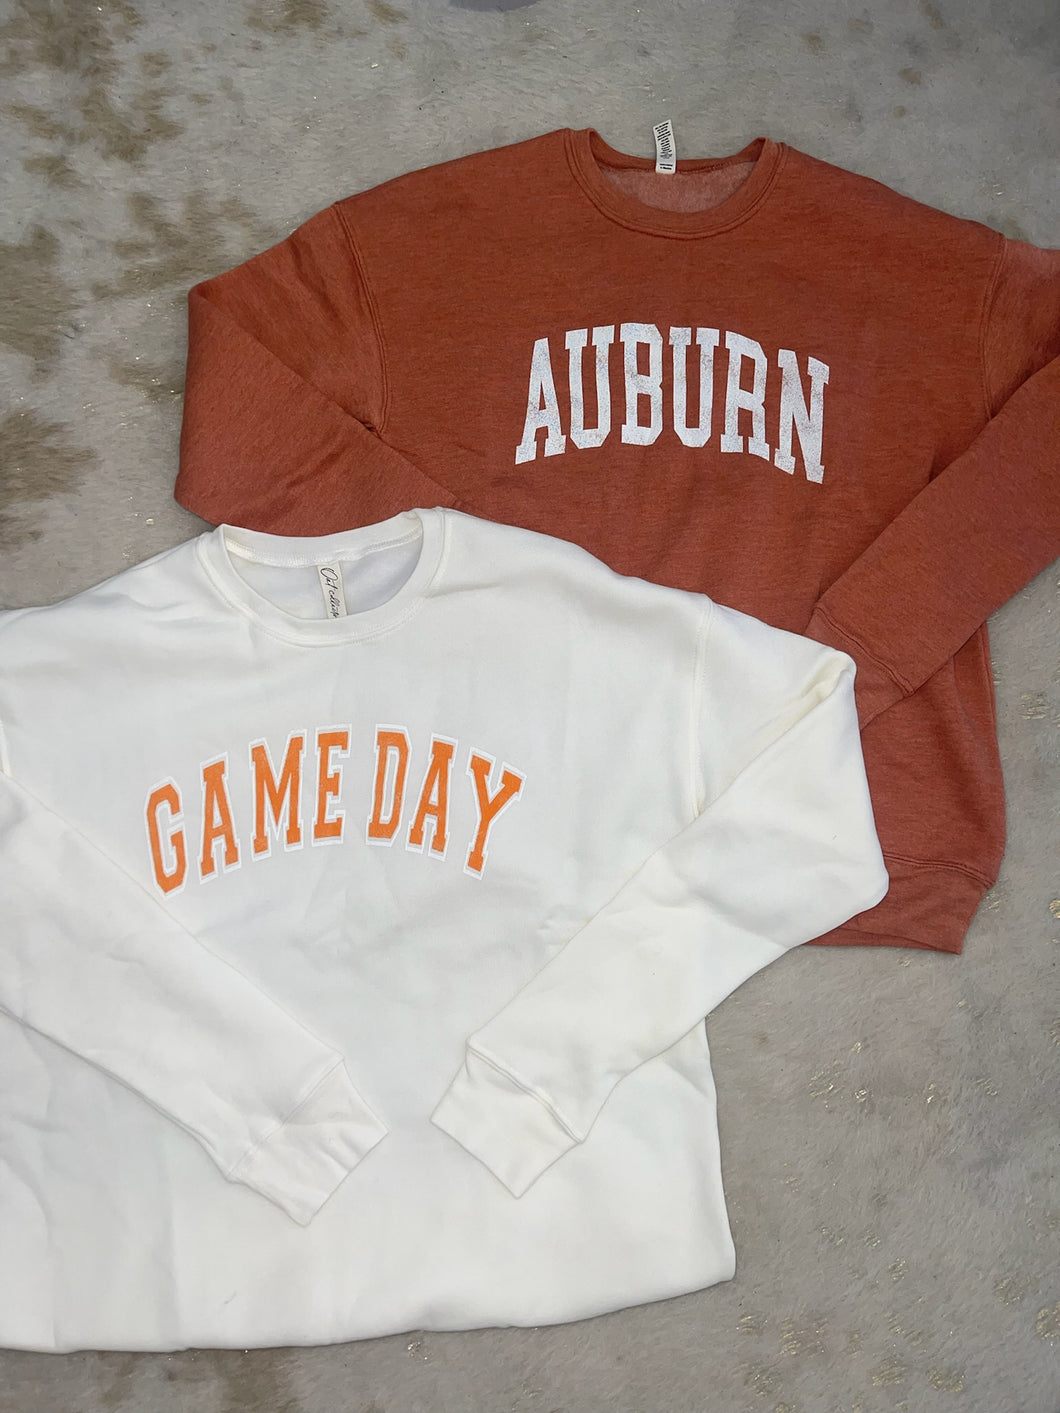 Auburn Sweatshirt